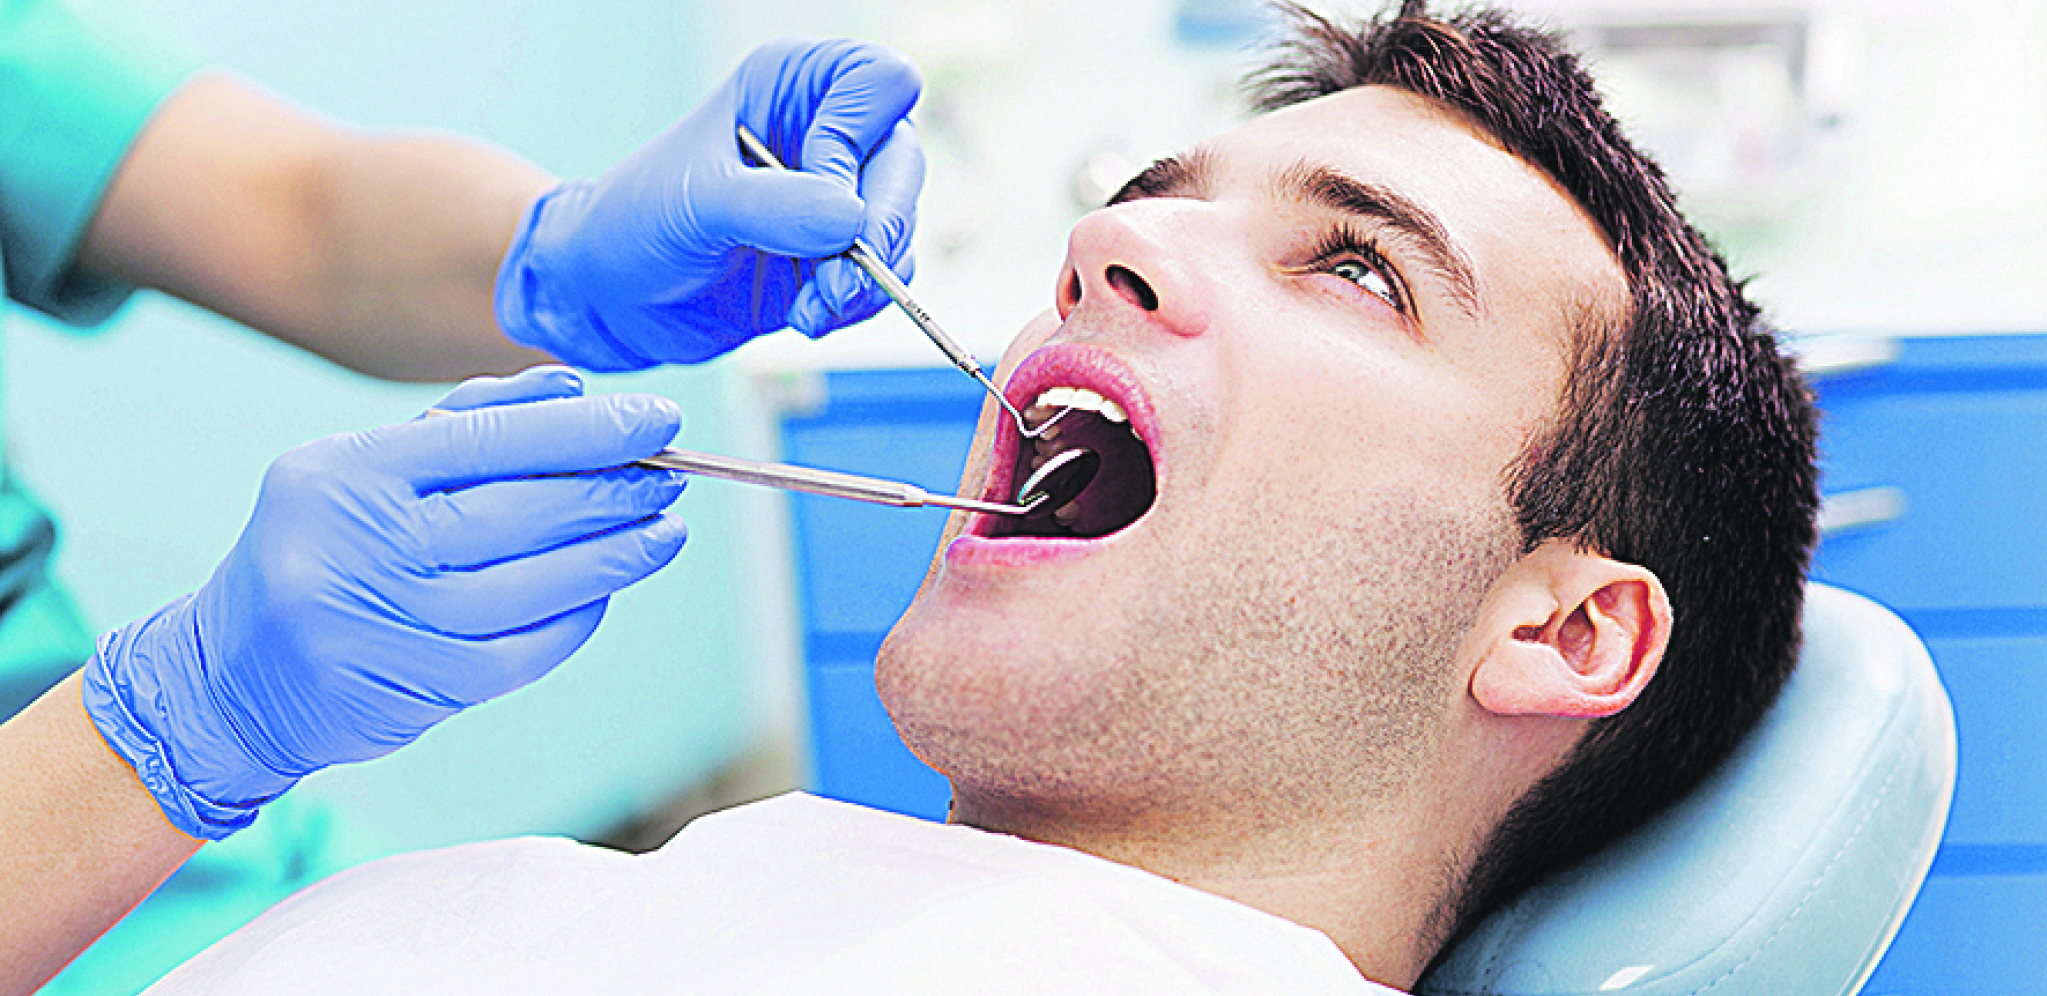 DA LI ZBOG STRAHA? Pacijenti uduvani idu kod zubara!